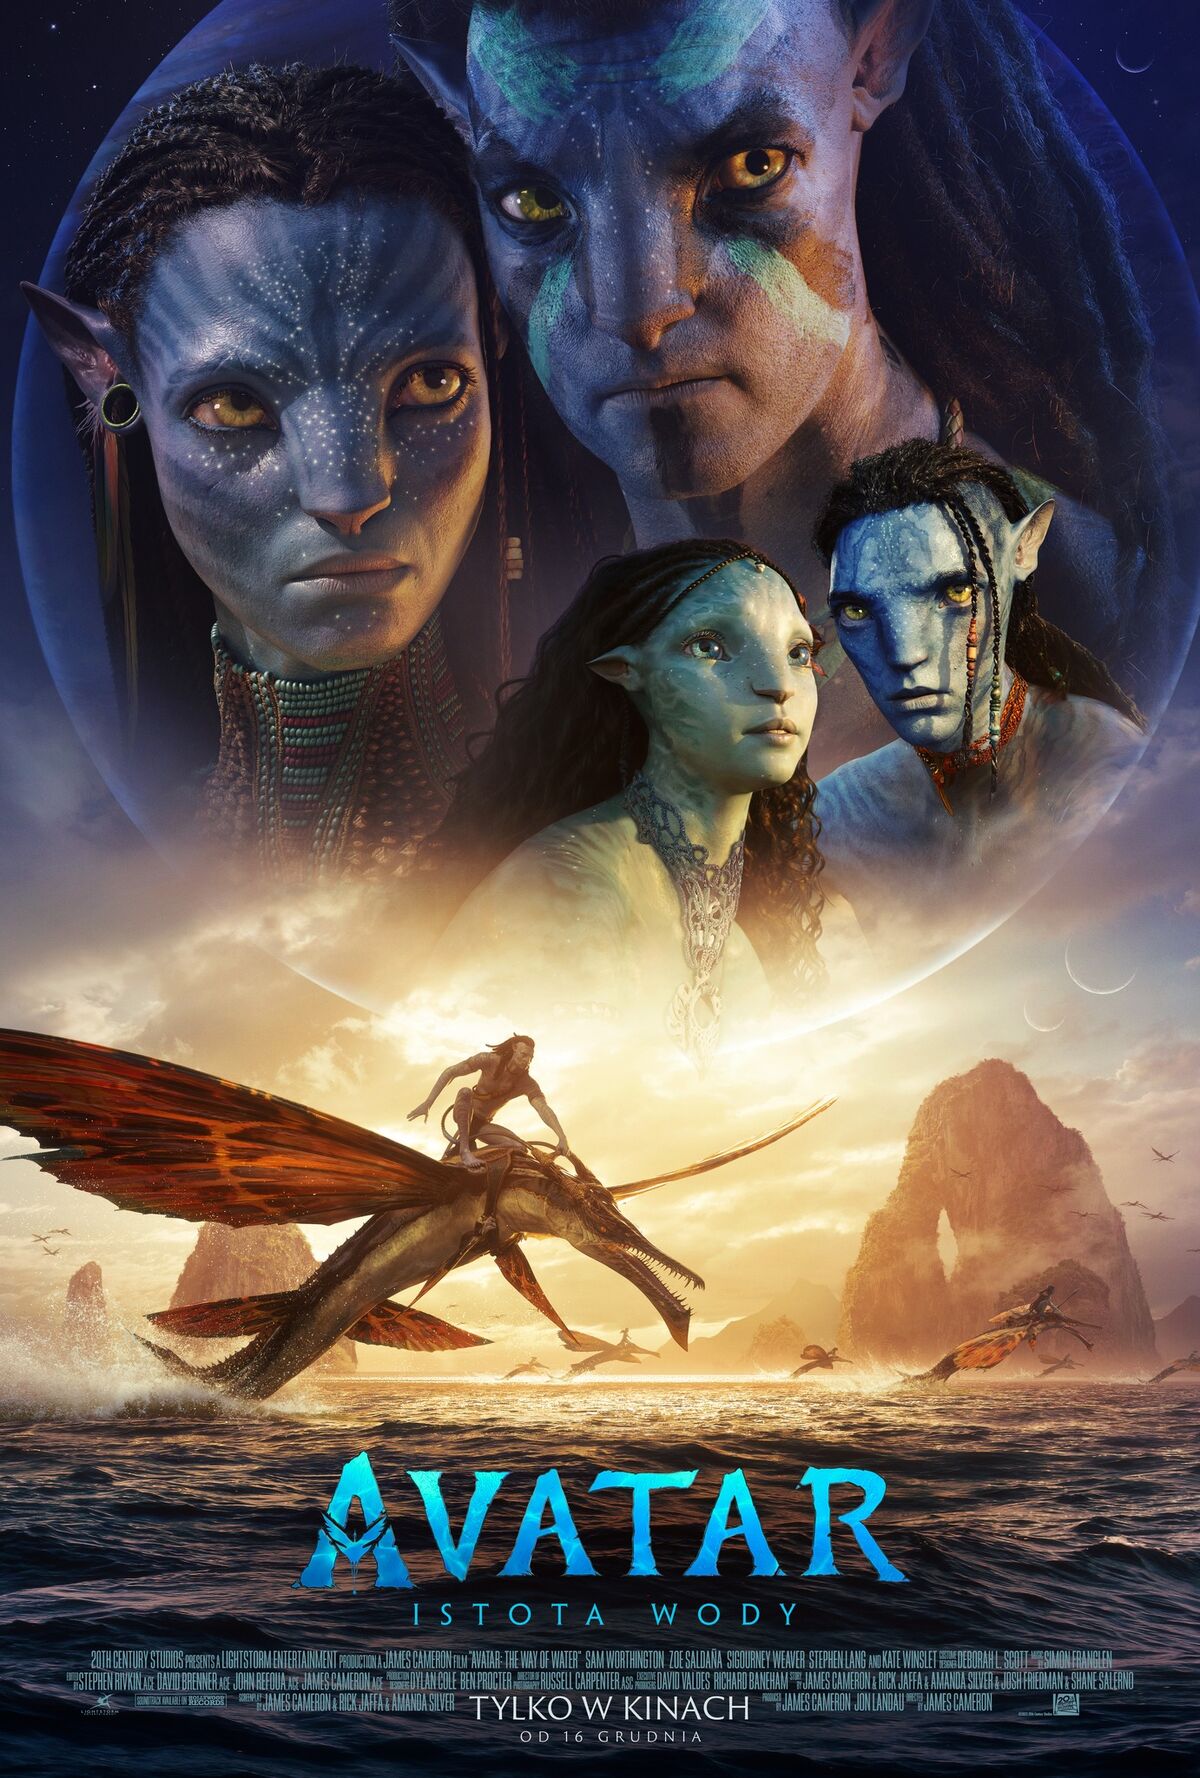 Bộ phim phiêu lưu, khoa học viễn tưởng với chất lượng hình ảnh tuyệt đẹp Avatar 2 sẽ khiến bạn cảm thấy đang sống trong một thế giới khác. Đặc biệt, phiên bản HD sẽ mang đến cho bạn những hình ảnh chân thực, sống động nhất. Cùng với câu chuyện lôi cuốn và những tình tiết bất ngờ, đây chắc chắn sẽ là một trong những bộ phim đáng xem nhất năm